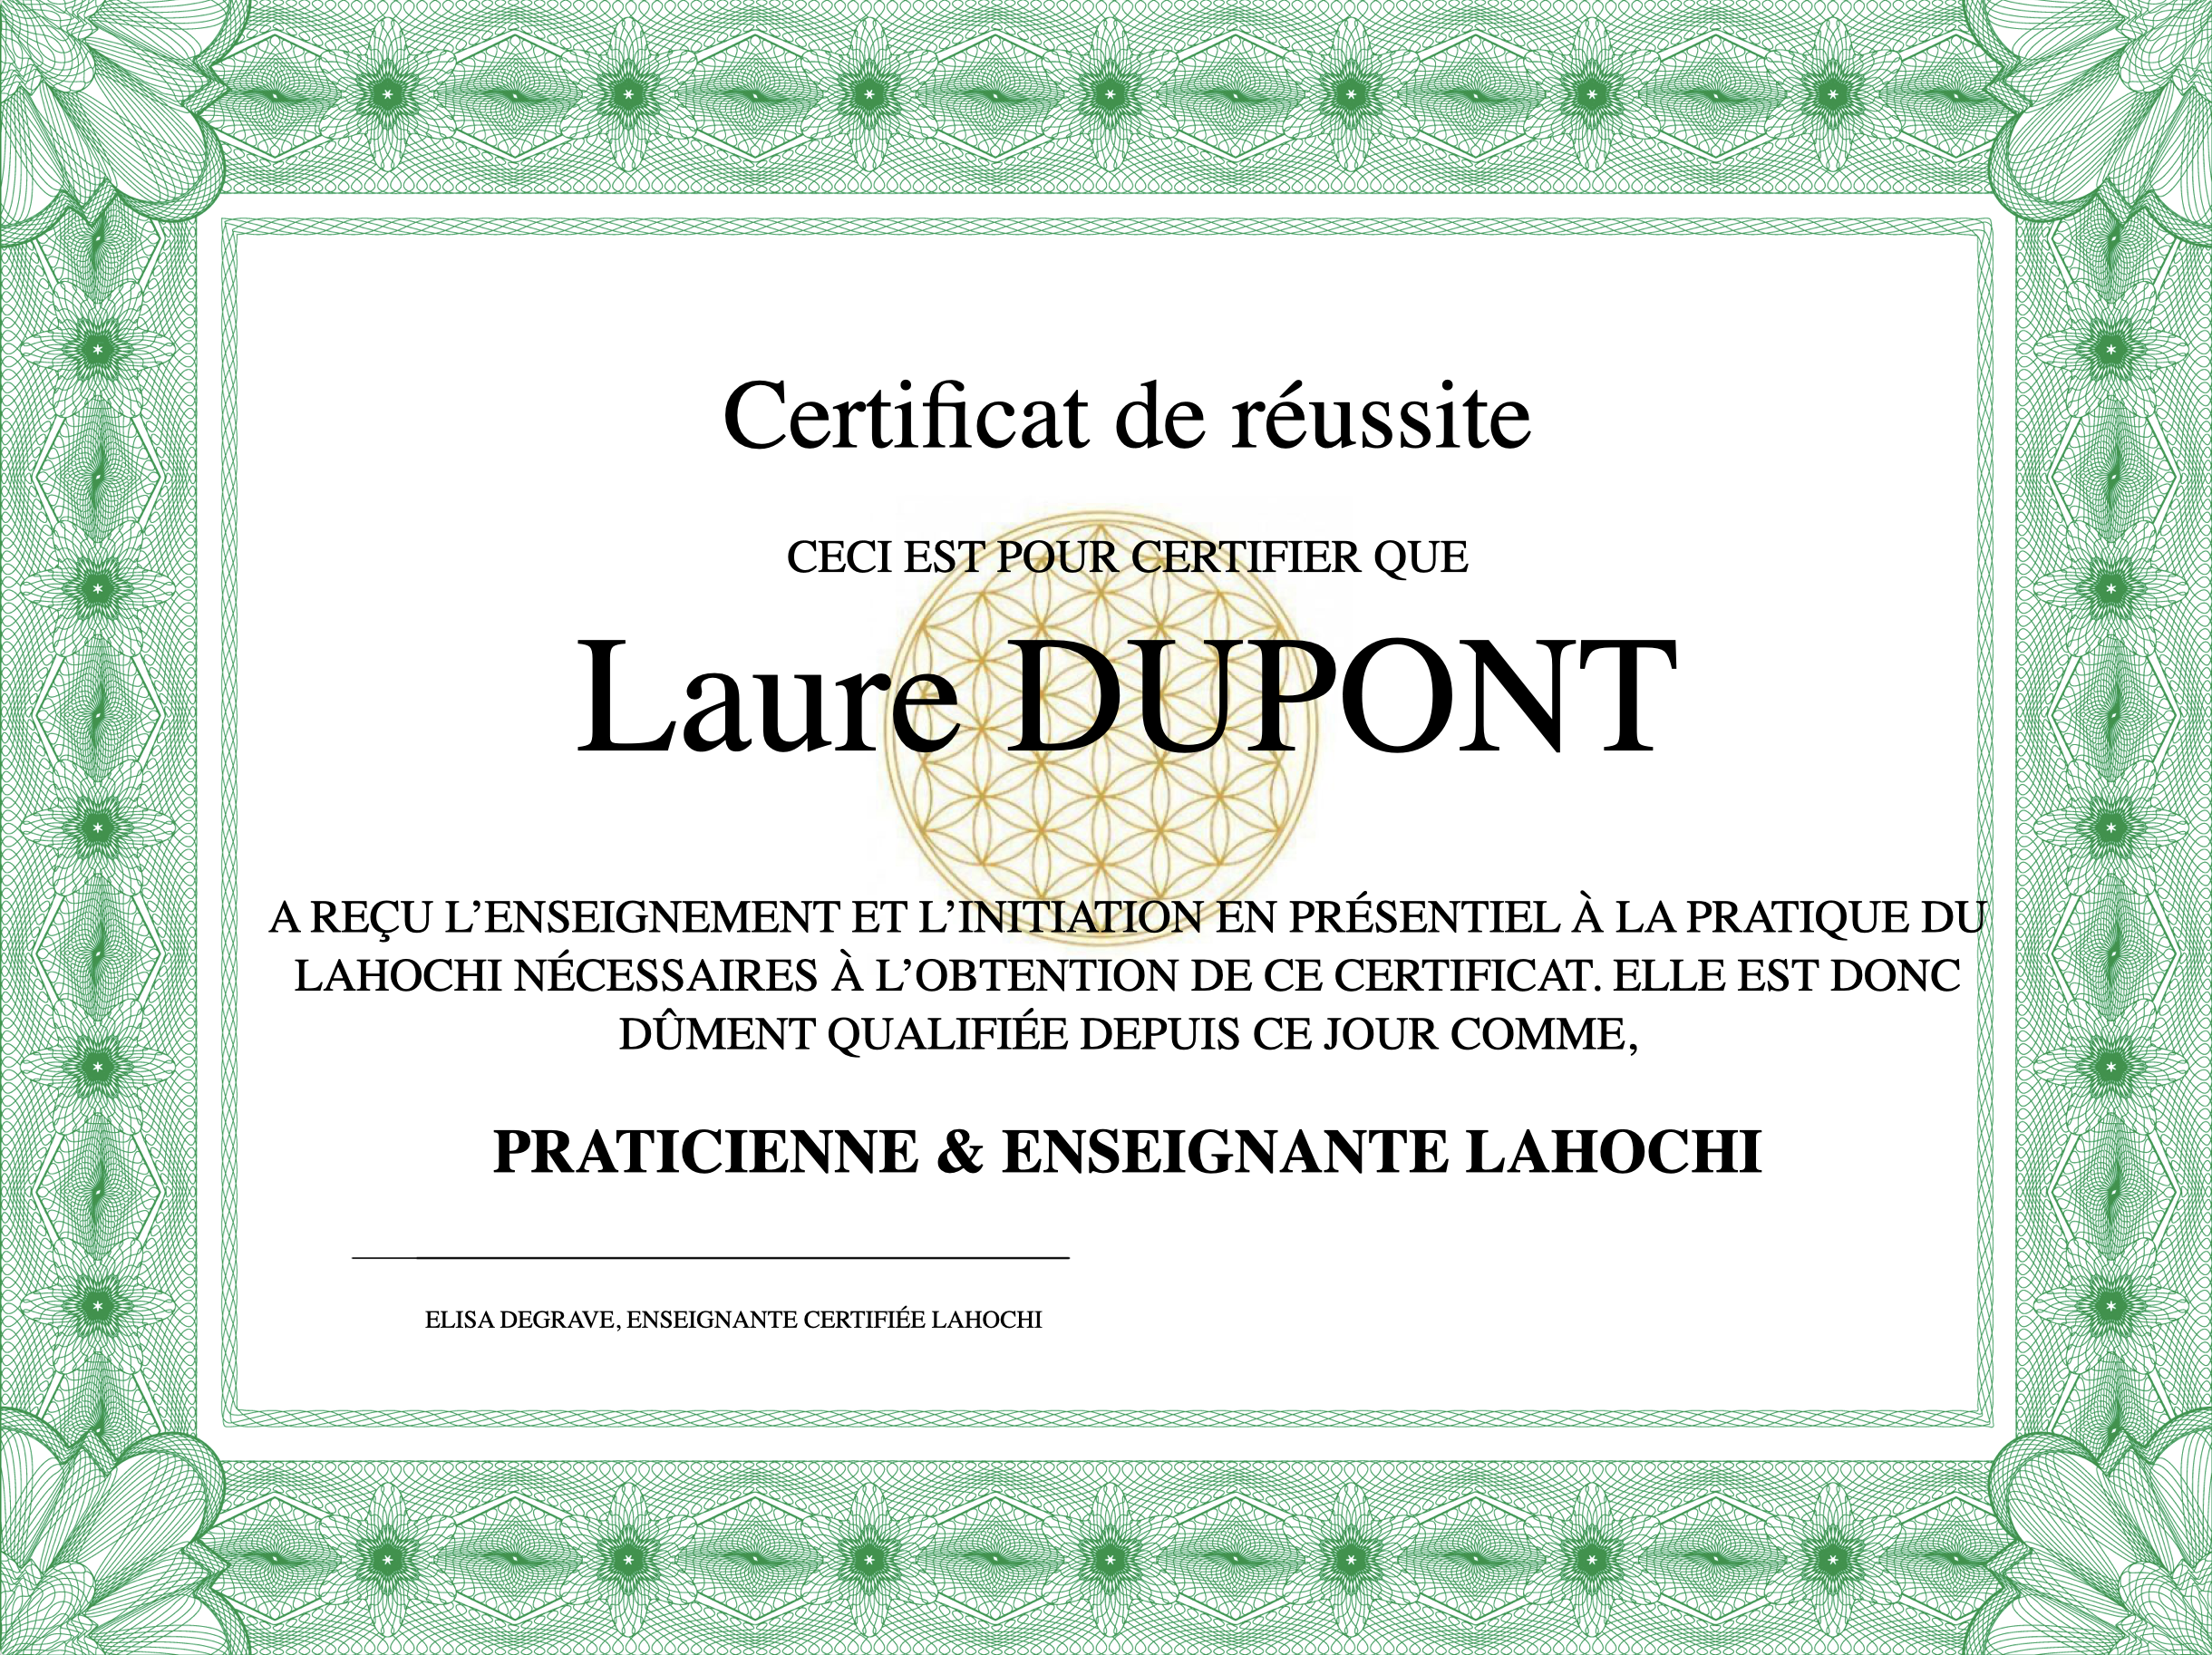 Certificat LaHoChi